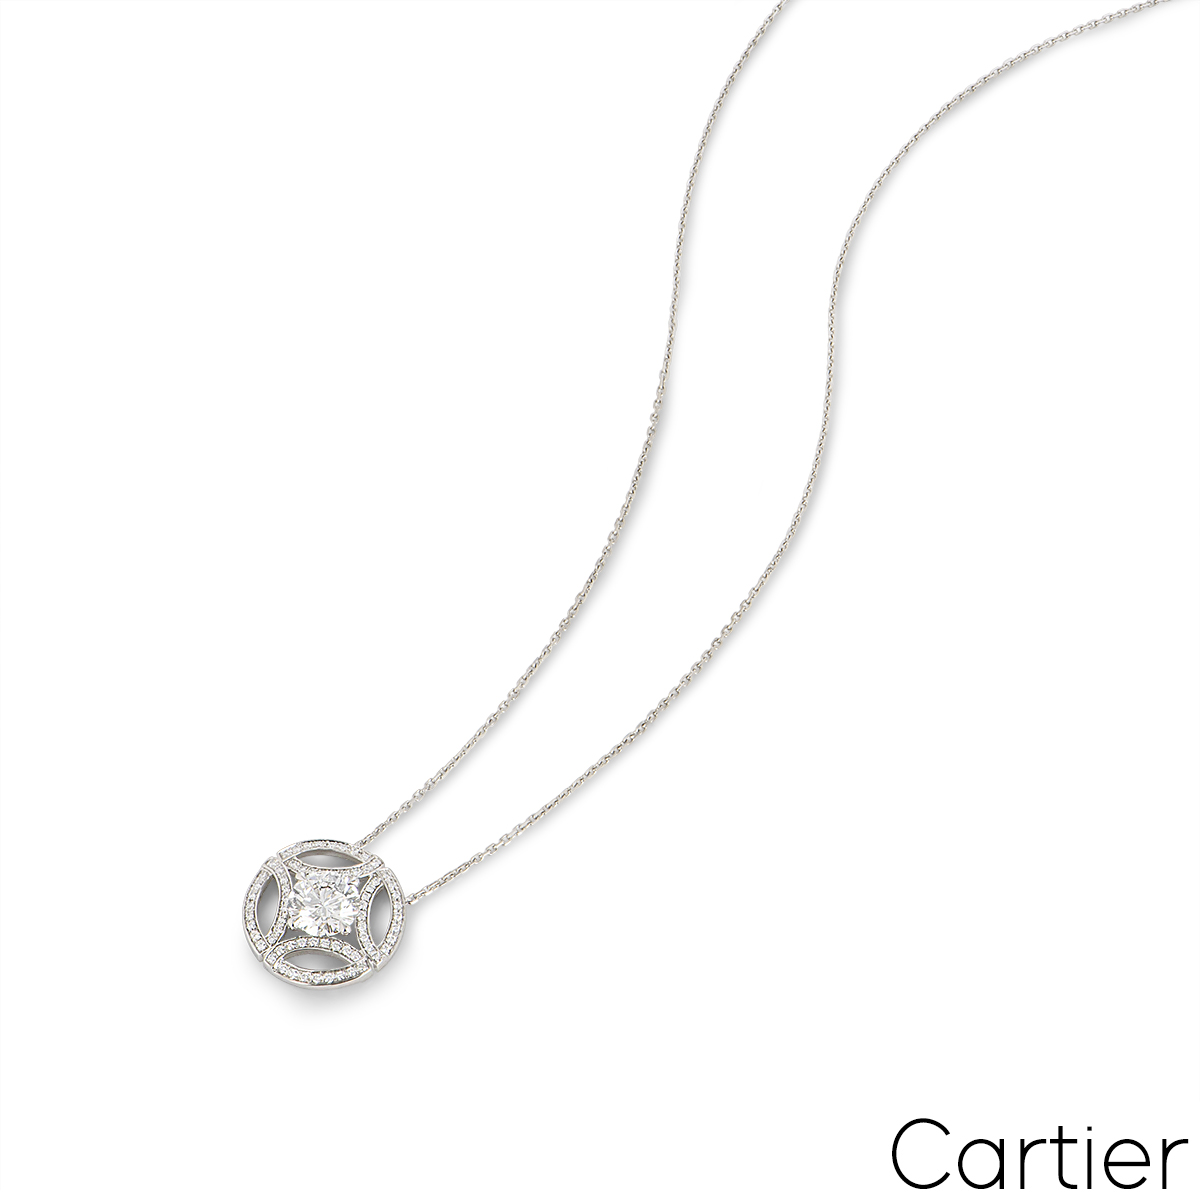 Cartier White Gold Diamond Galanterie de Cartier Pendant N7424173 1.55ct E/VS2